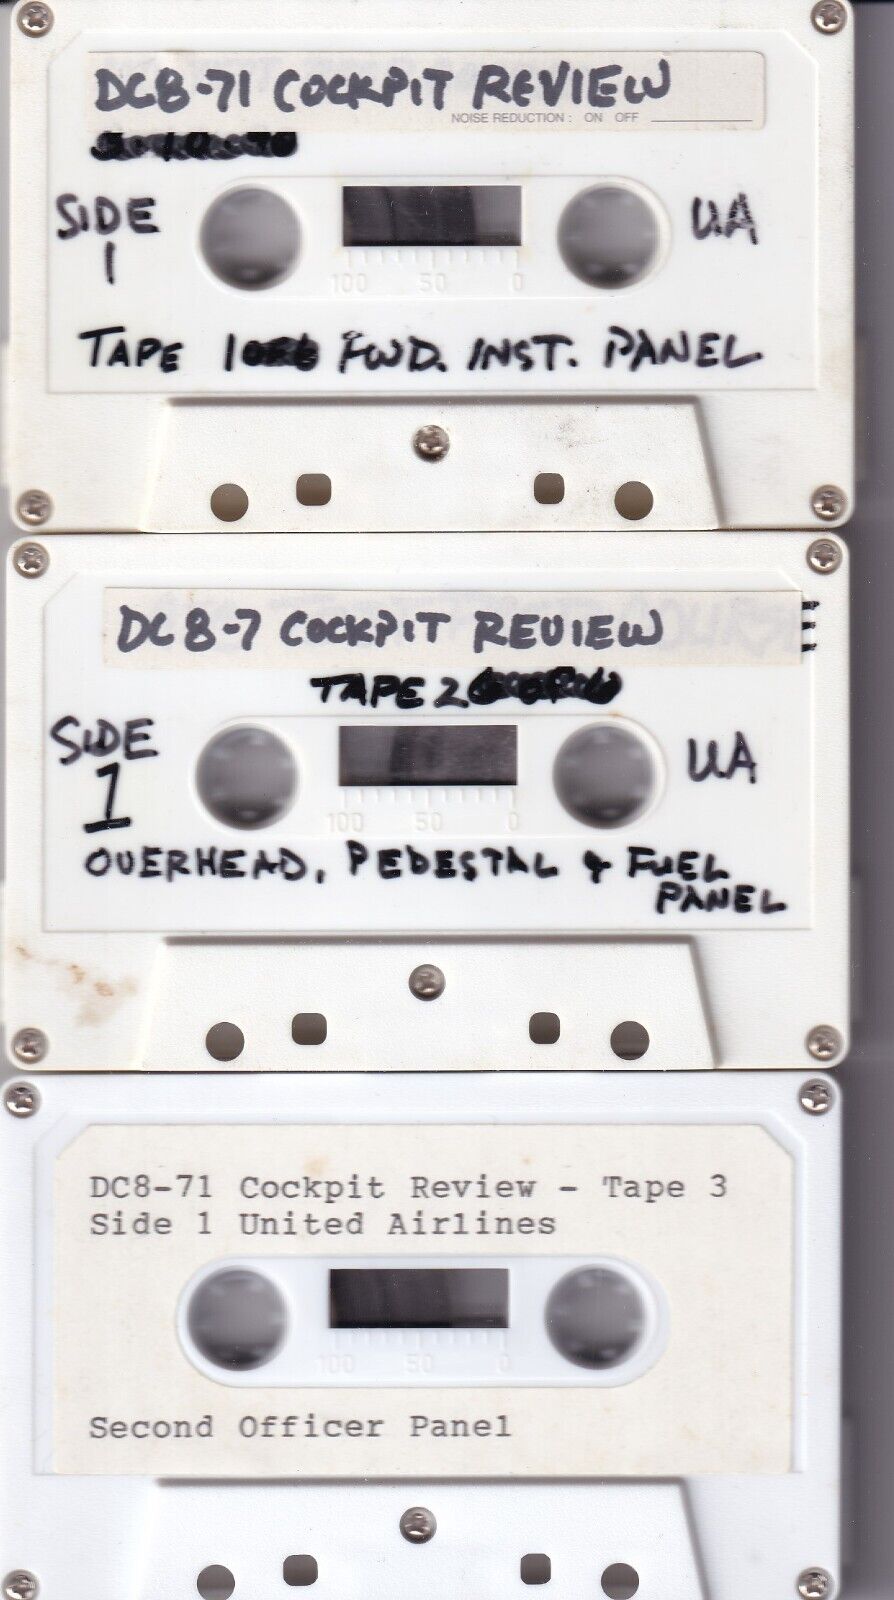 DC8-71 Cockpit Review cassettes